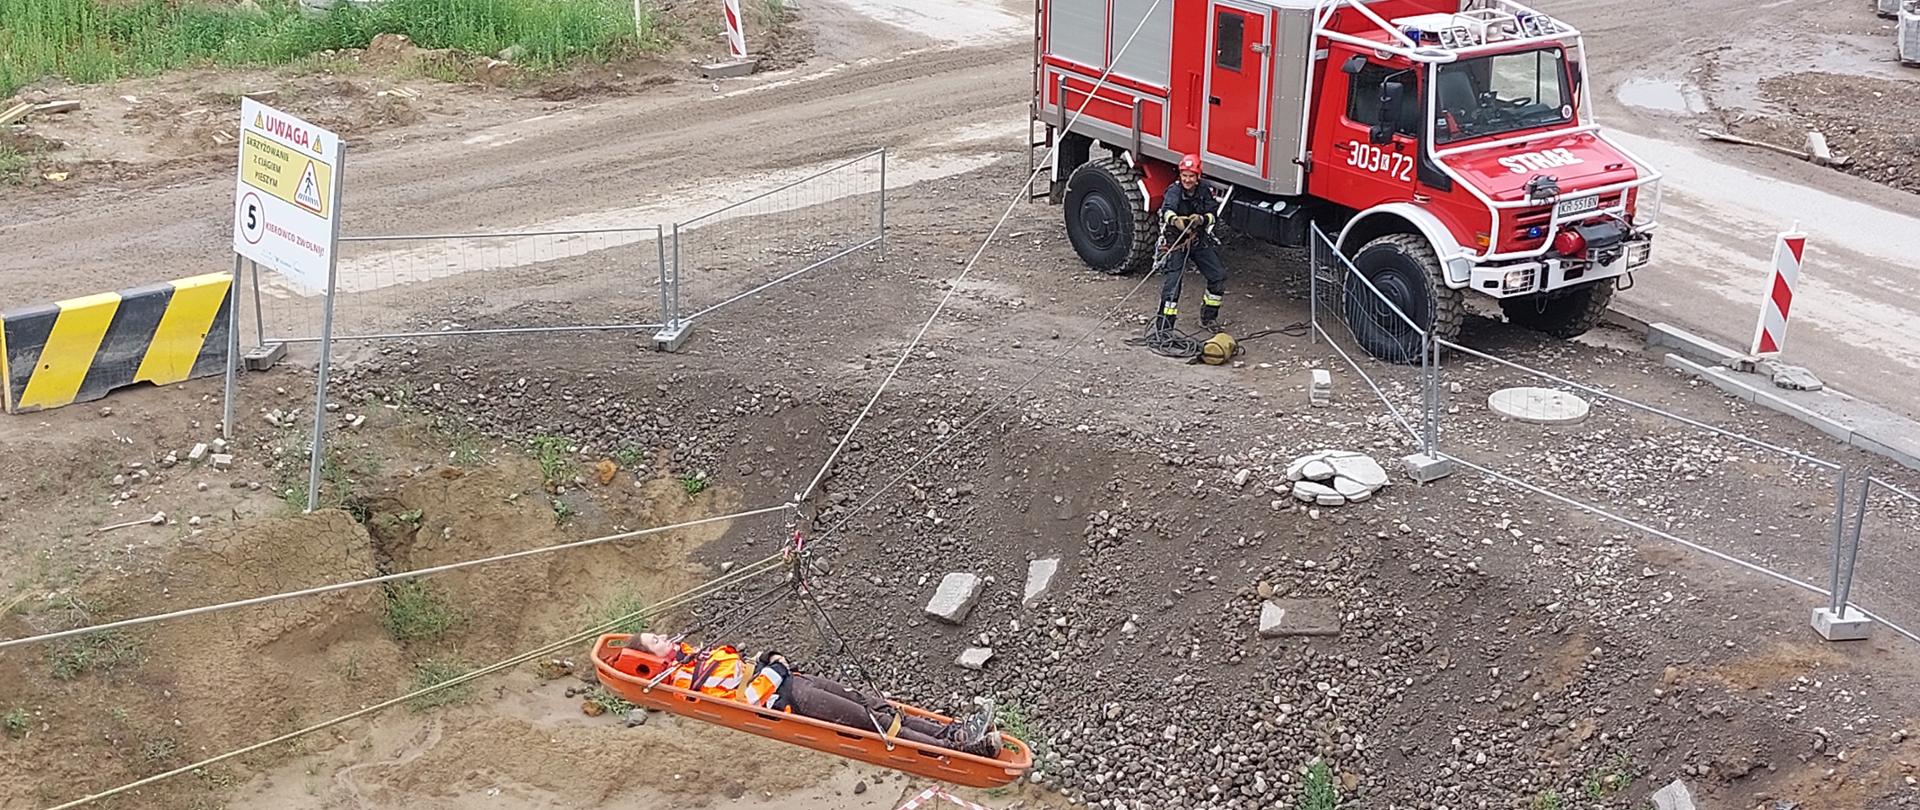 Ćwiczenia PSP, poszkodowana transportowana na placu budowy z estakady do wozu strażackiego w noszach na tzw. tyrolce